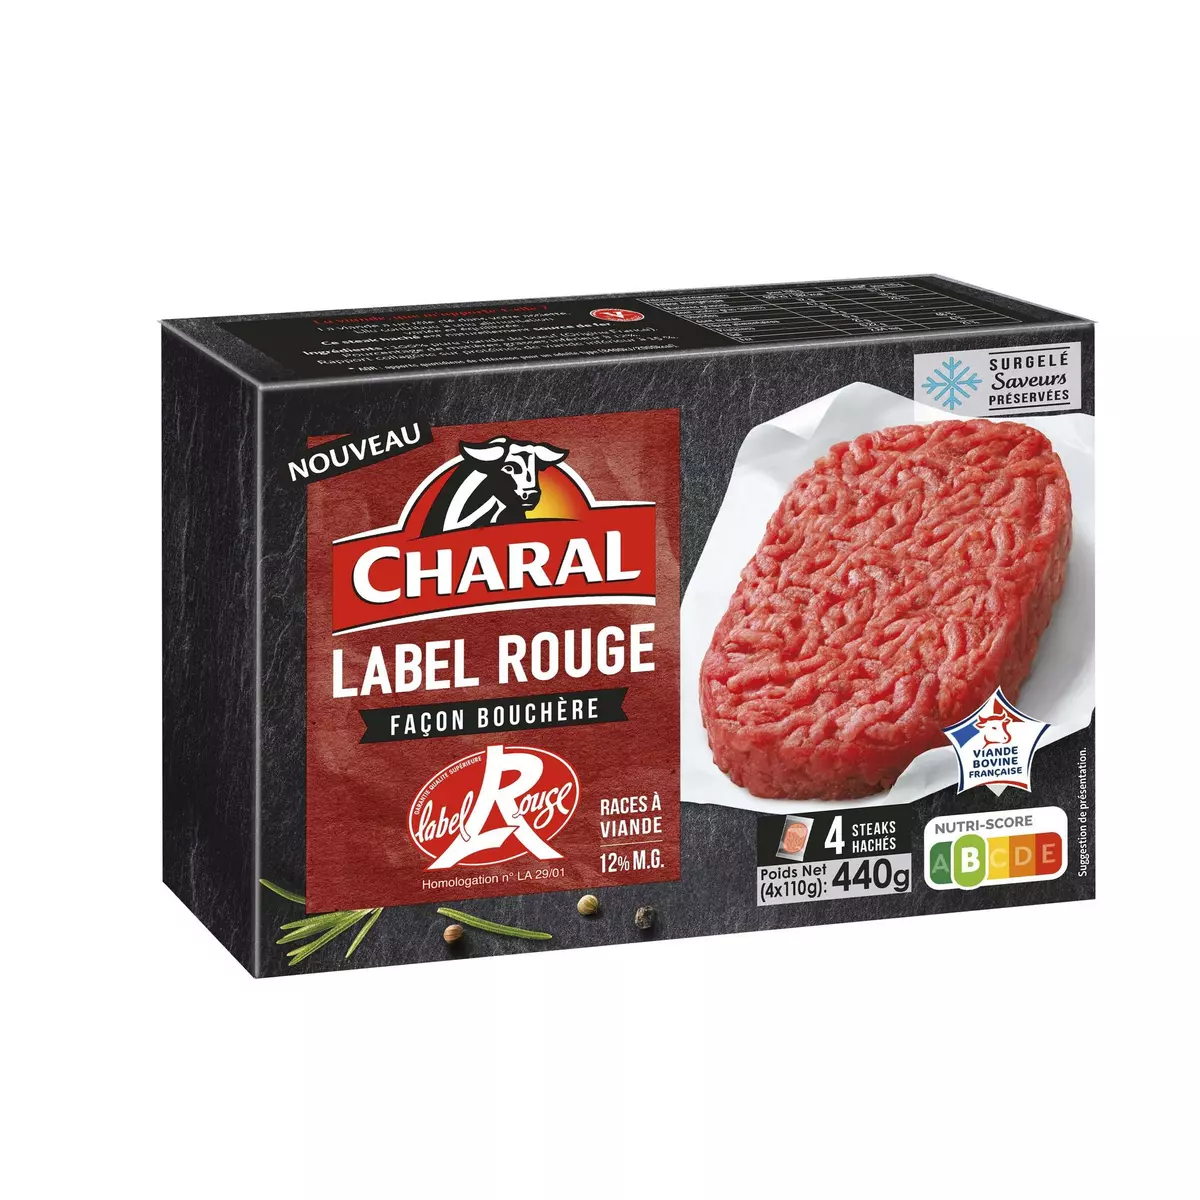 CHARAL Steaks hachés façon bouchère 12%MG Label Rouge 4 pièces 440g